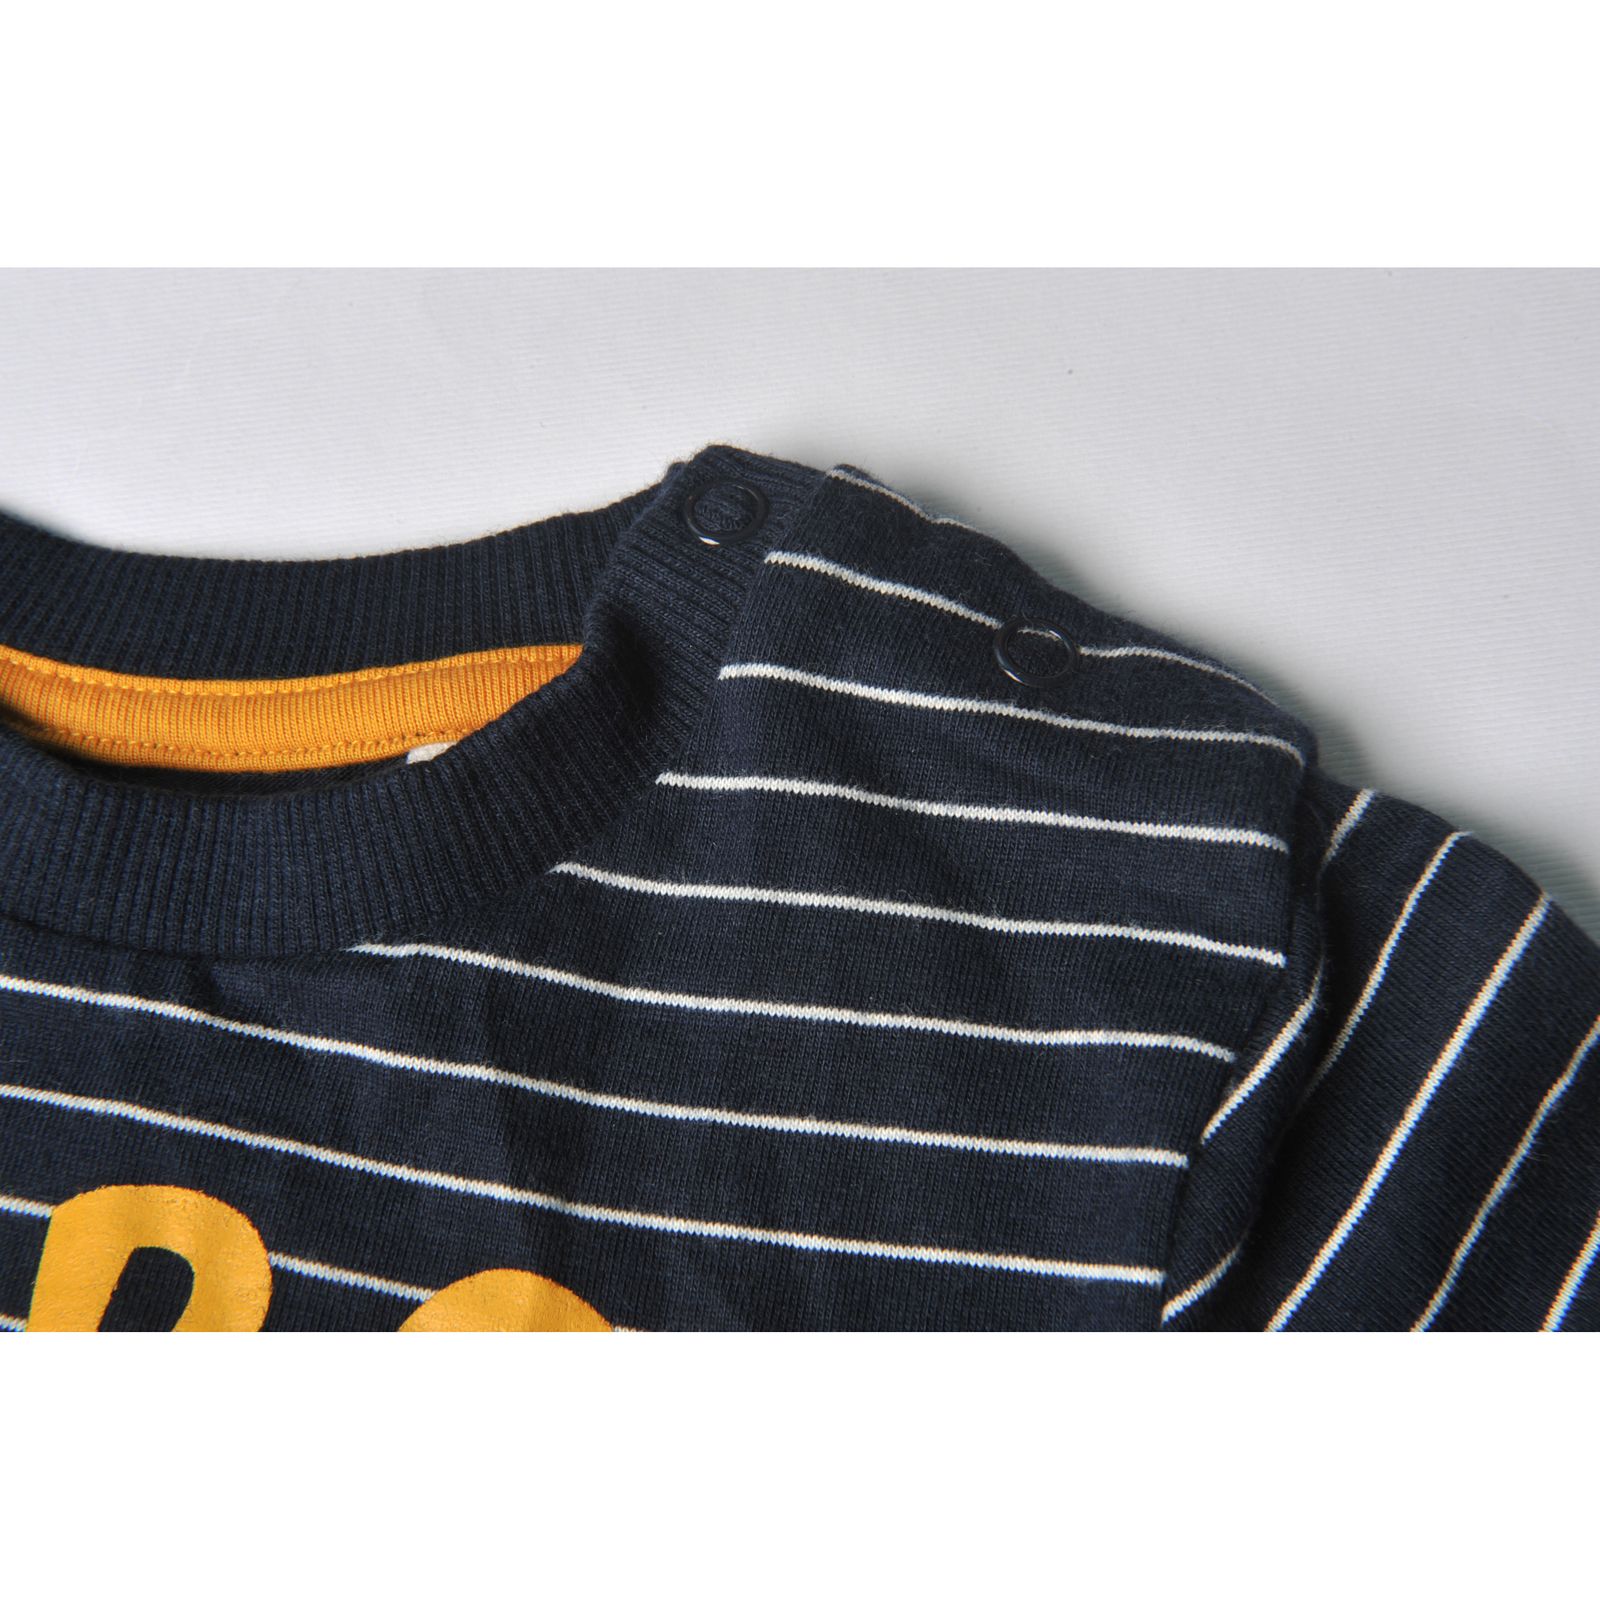 تی شرت آستین بلند نوزادی توپومینی مدل 127223 رنگ سرمه ای -  - 5